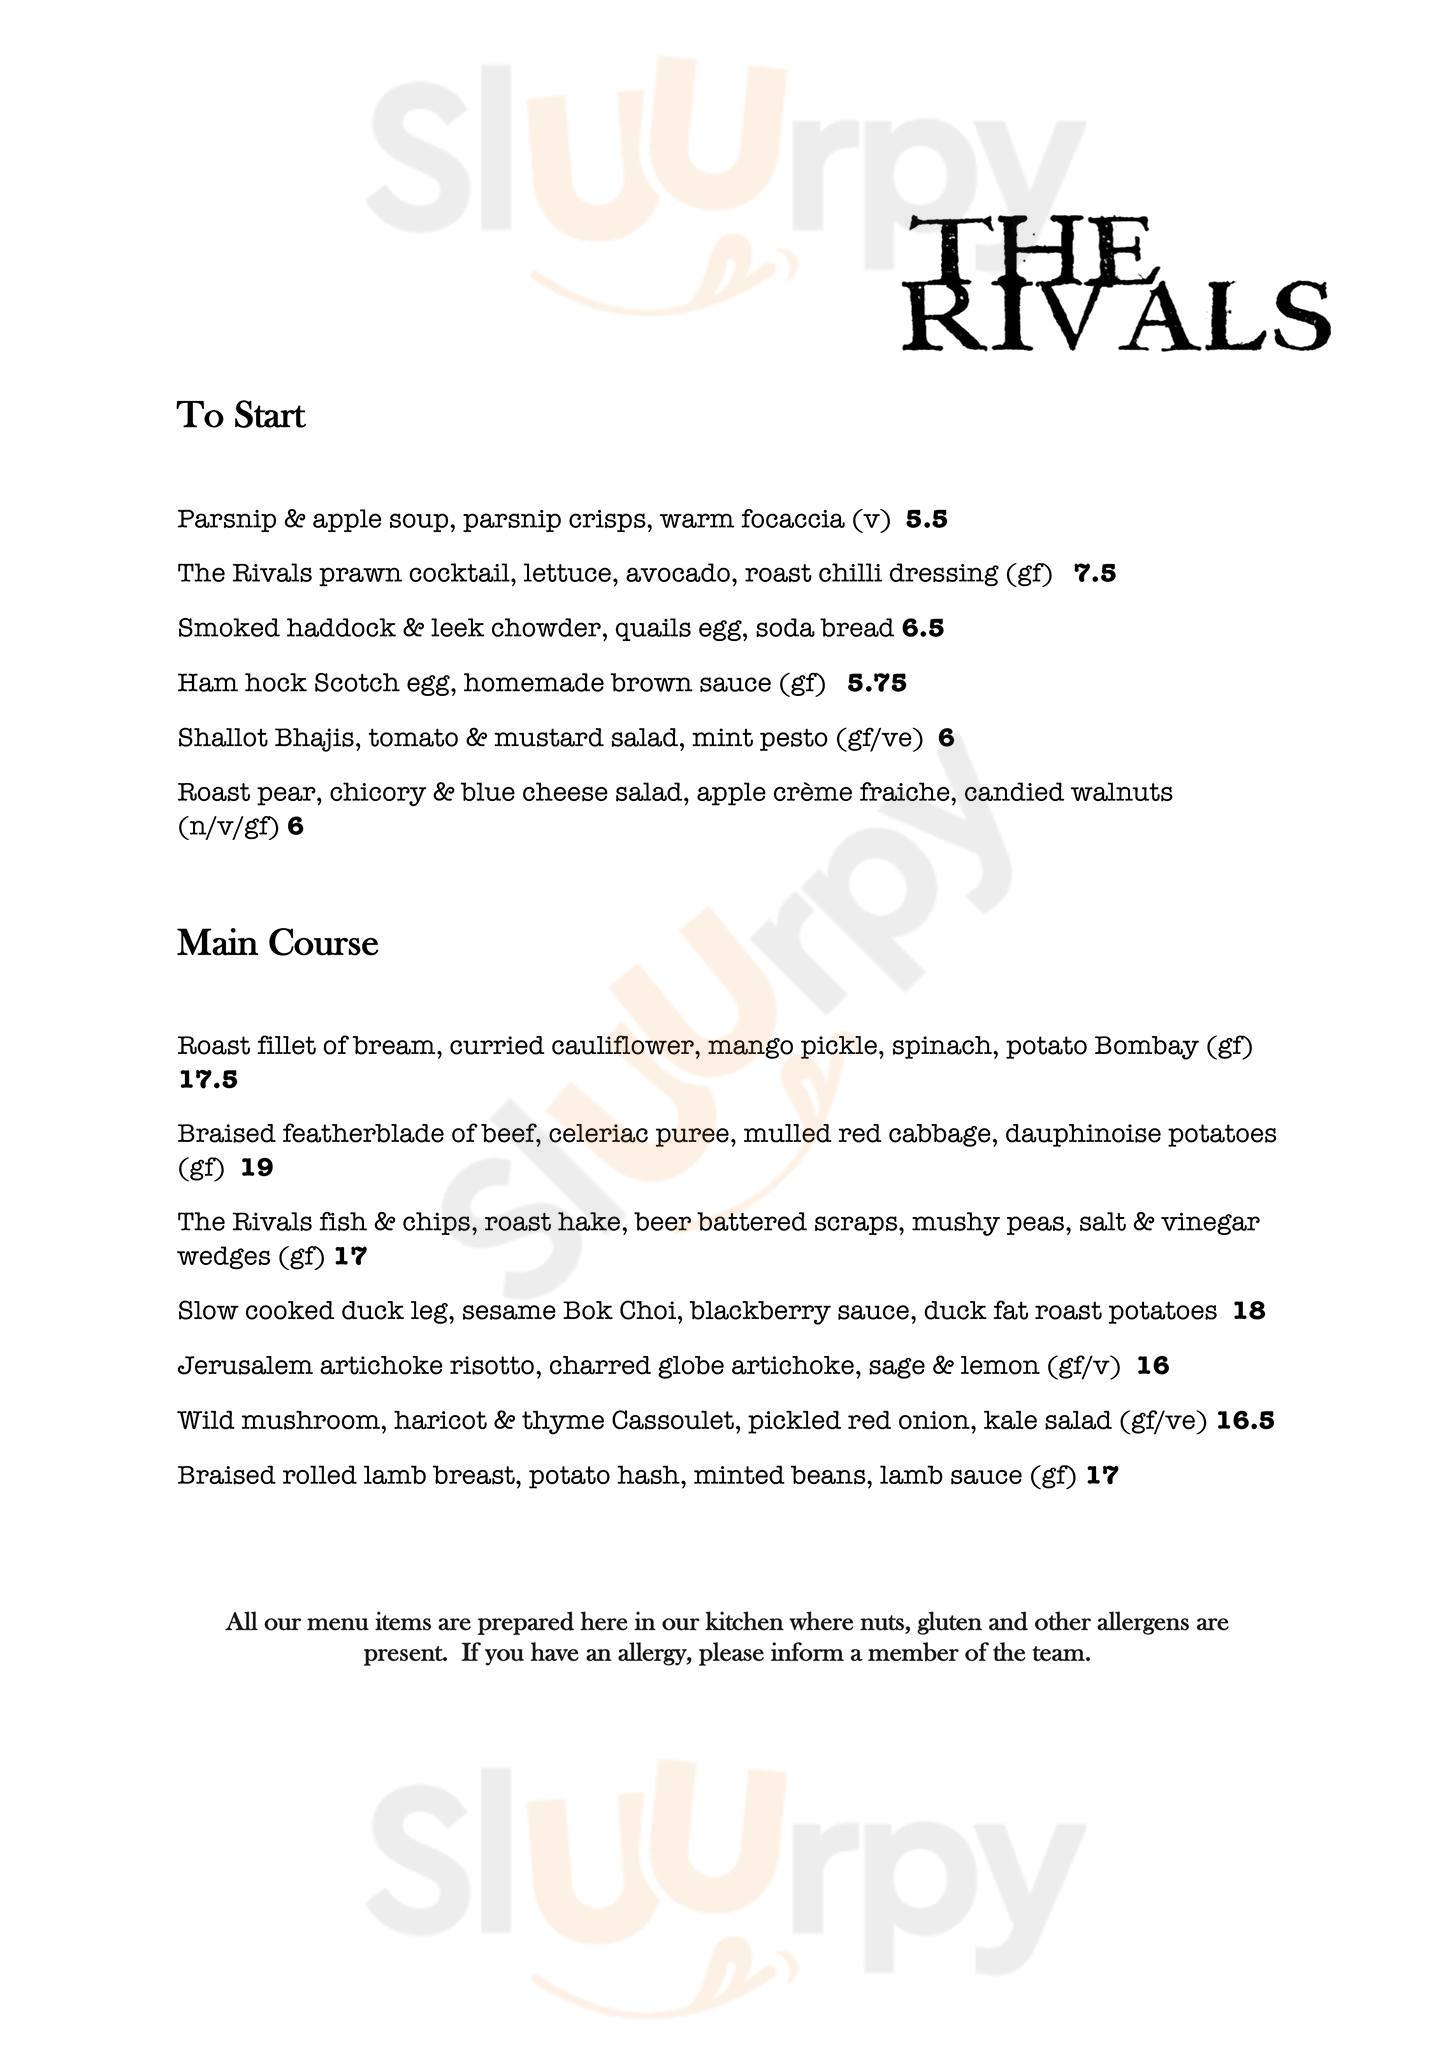 The Rivals Bar & Restaurant Manchester Menu - 1